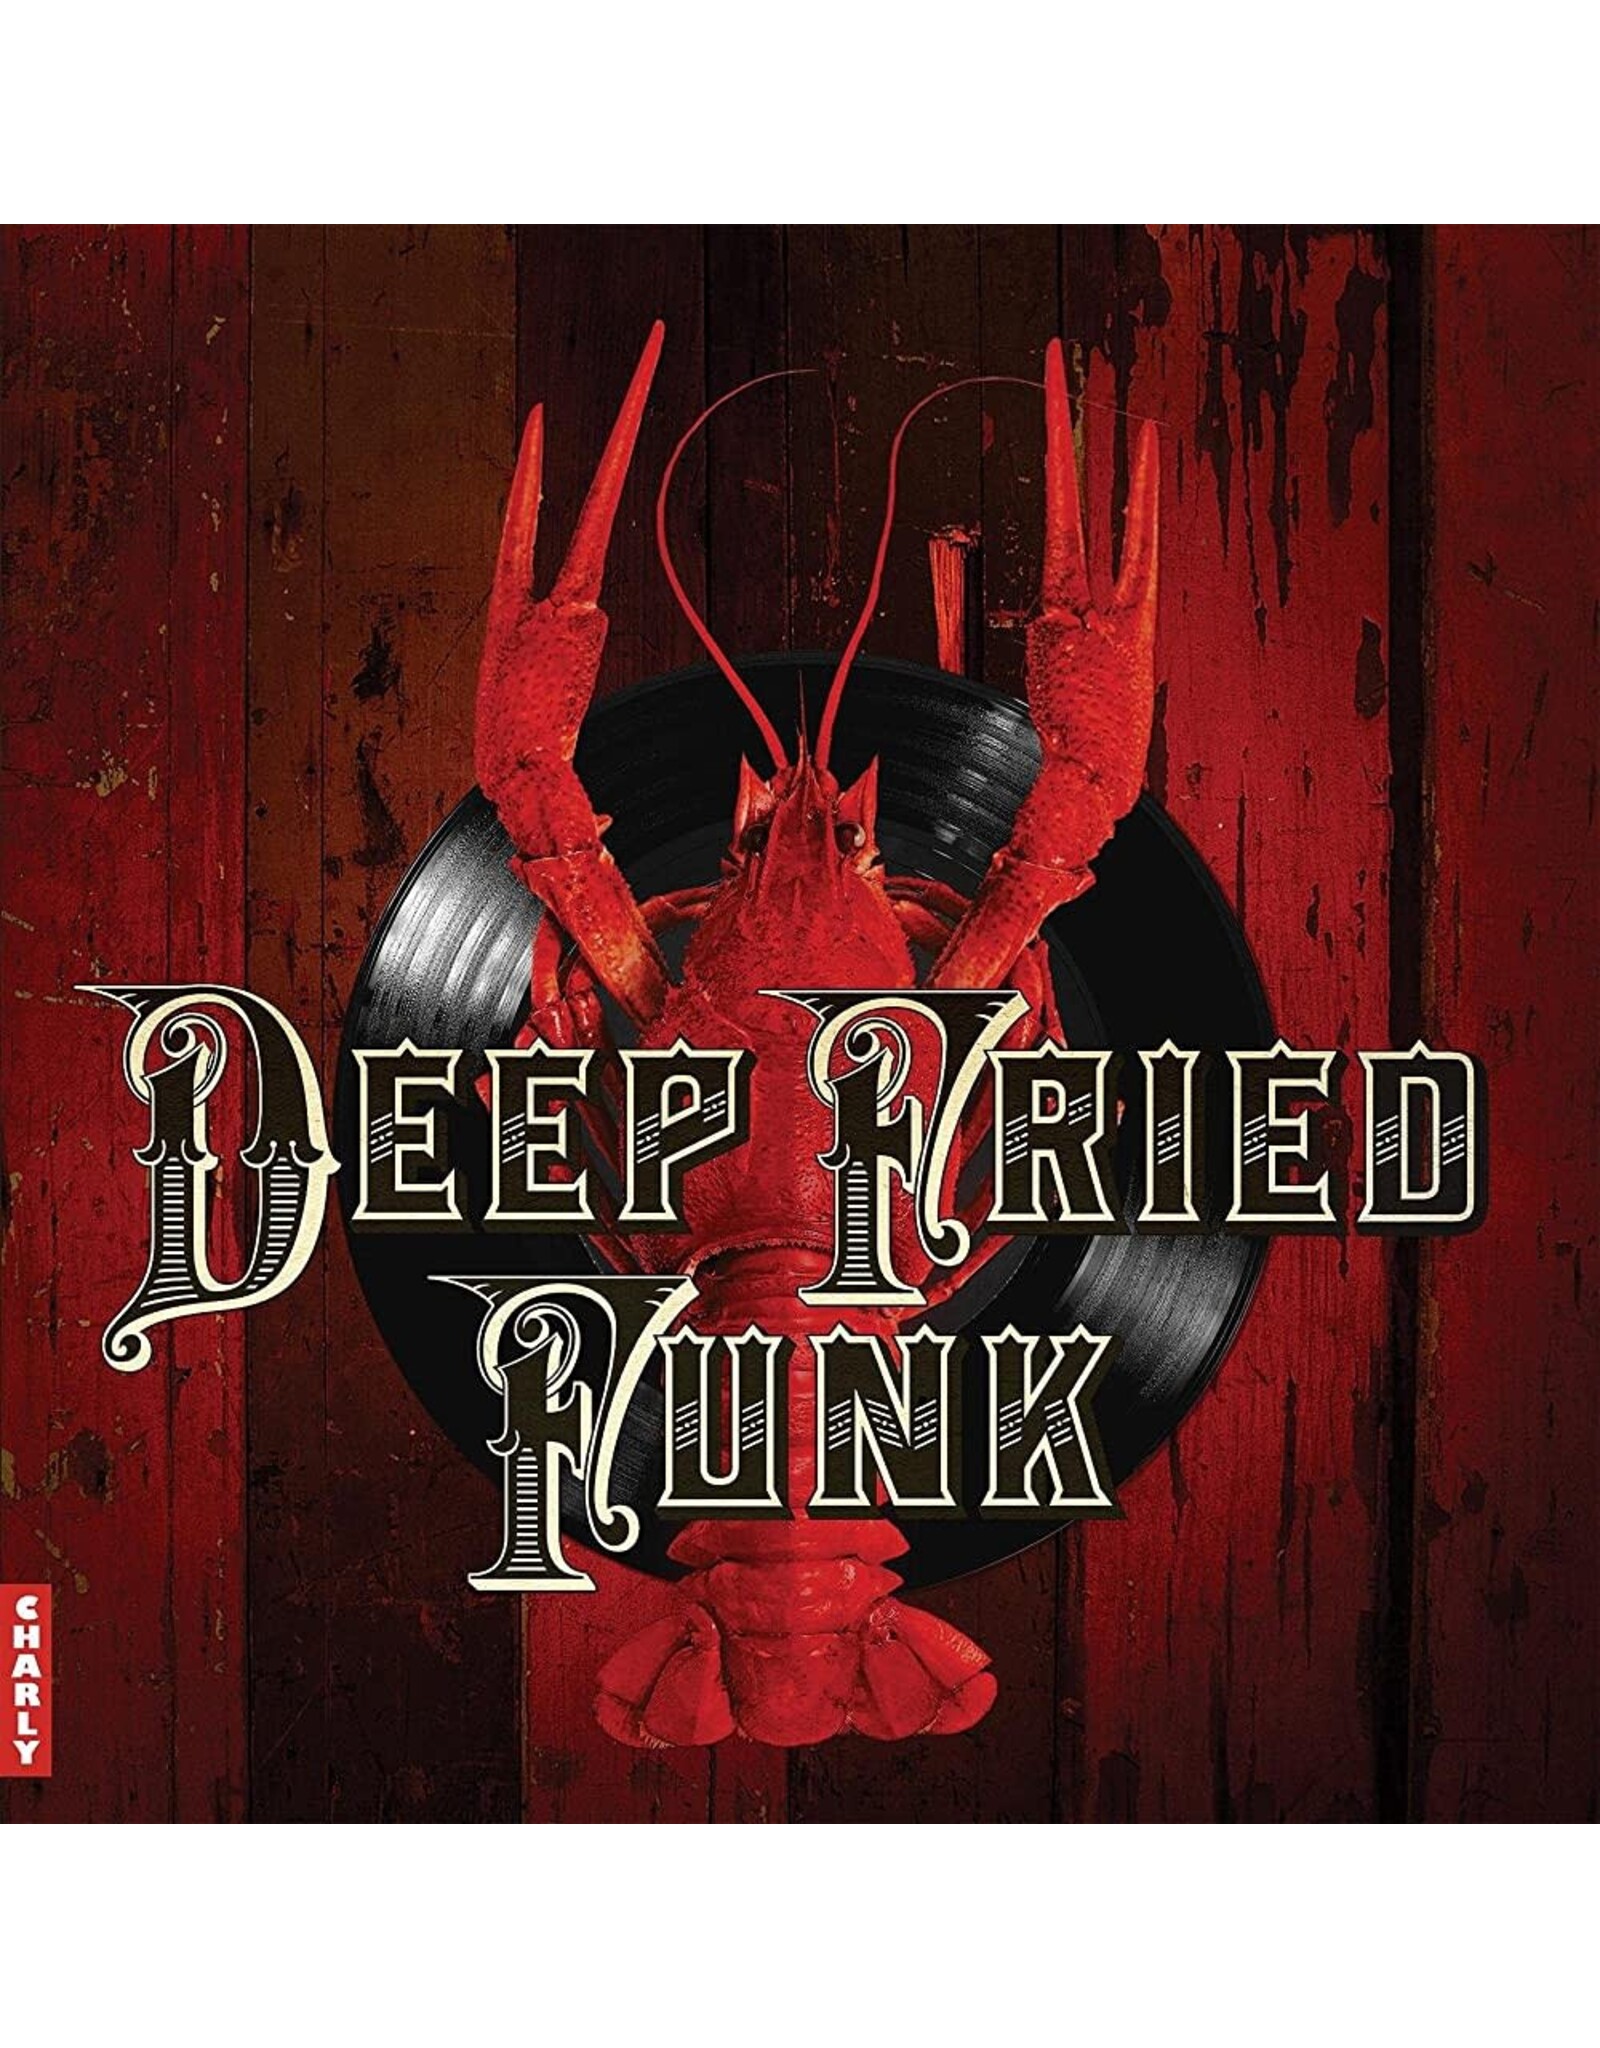 Various - Deep Fried Funk